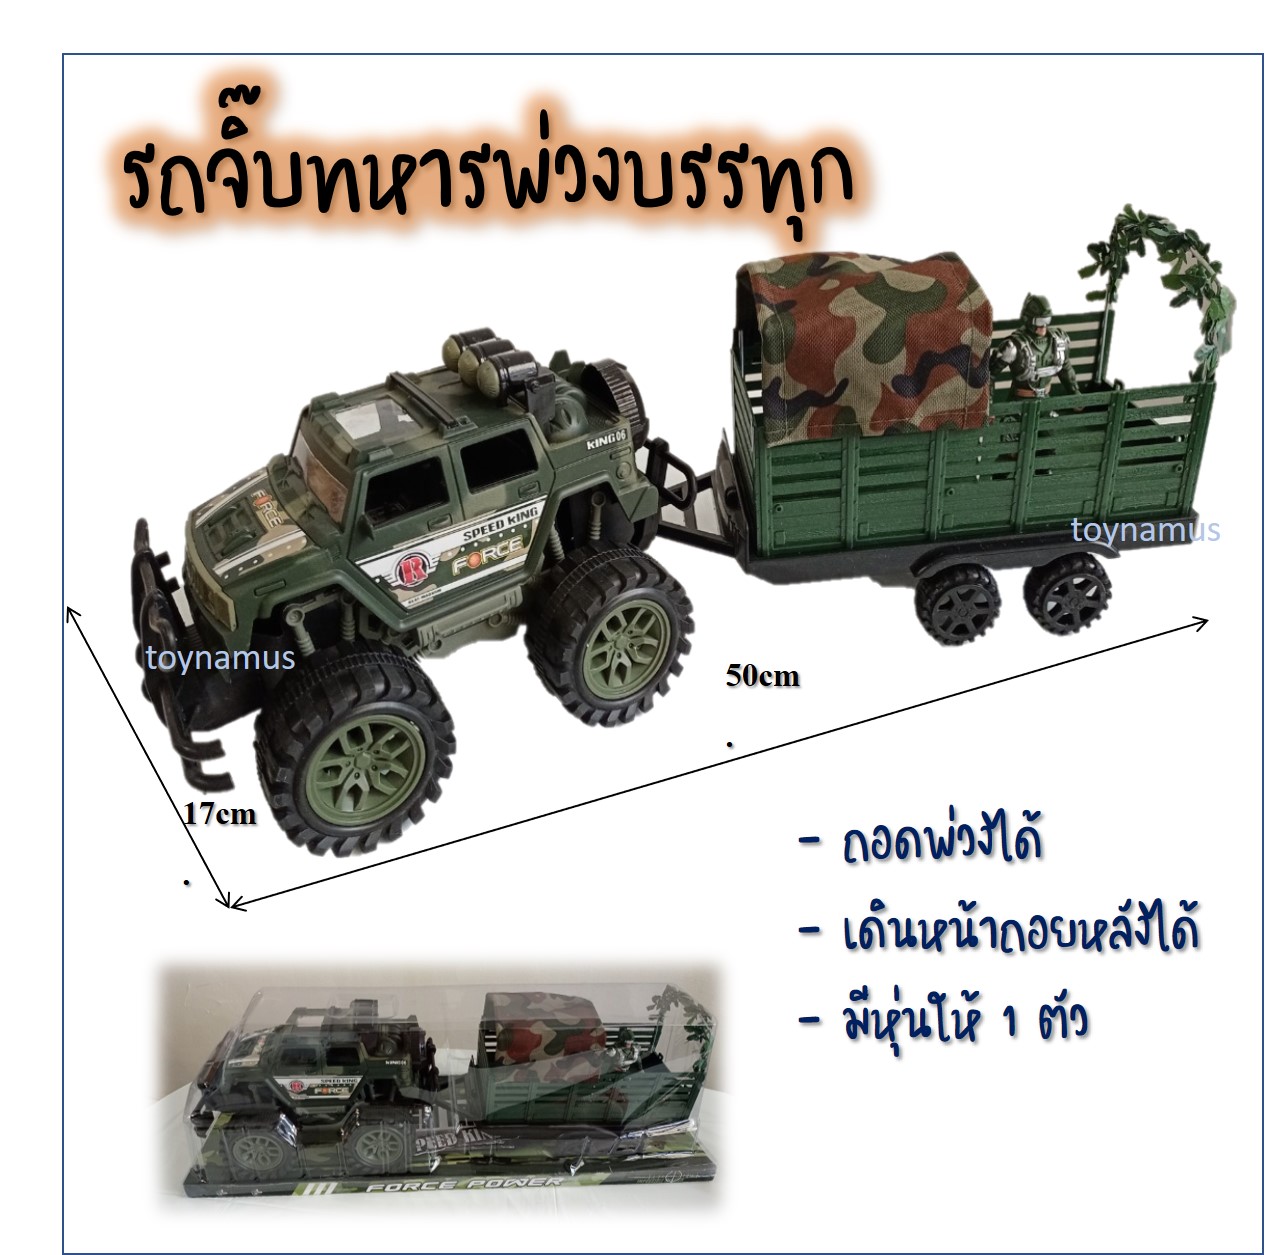 Toynamusรถจิ๊บพ่วงทหาร พร้อมหุ่นทหาร 1 ตัว รถทหาร รถบรรทุก รถทหารพ่วง รถจิ๊บ รถลายพราง รถลาก  รถของเล่น ของเล่นเด็ก ของเด็กเล่น